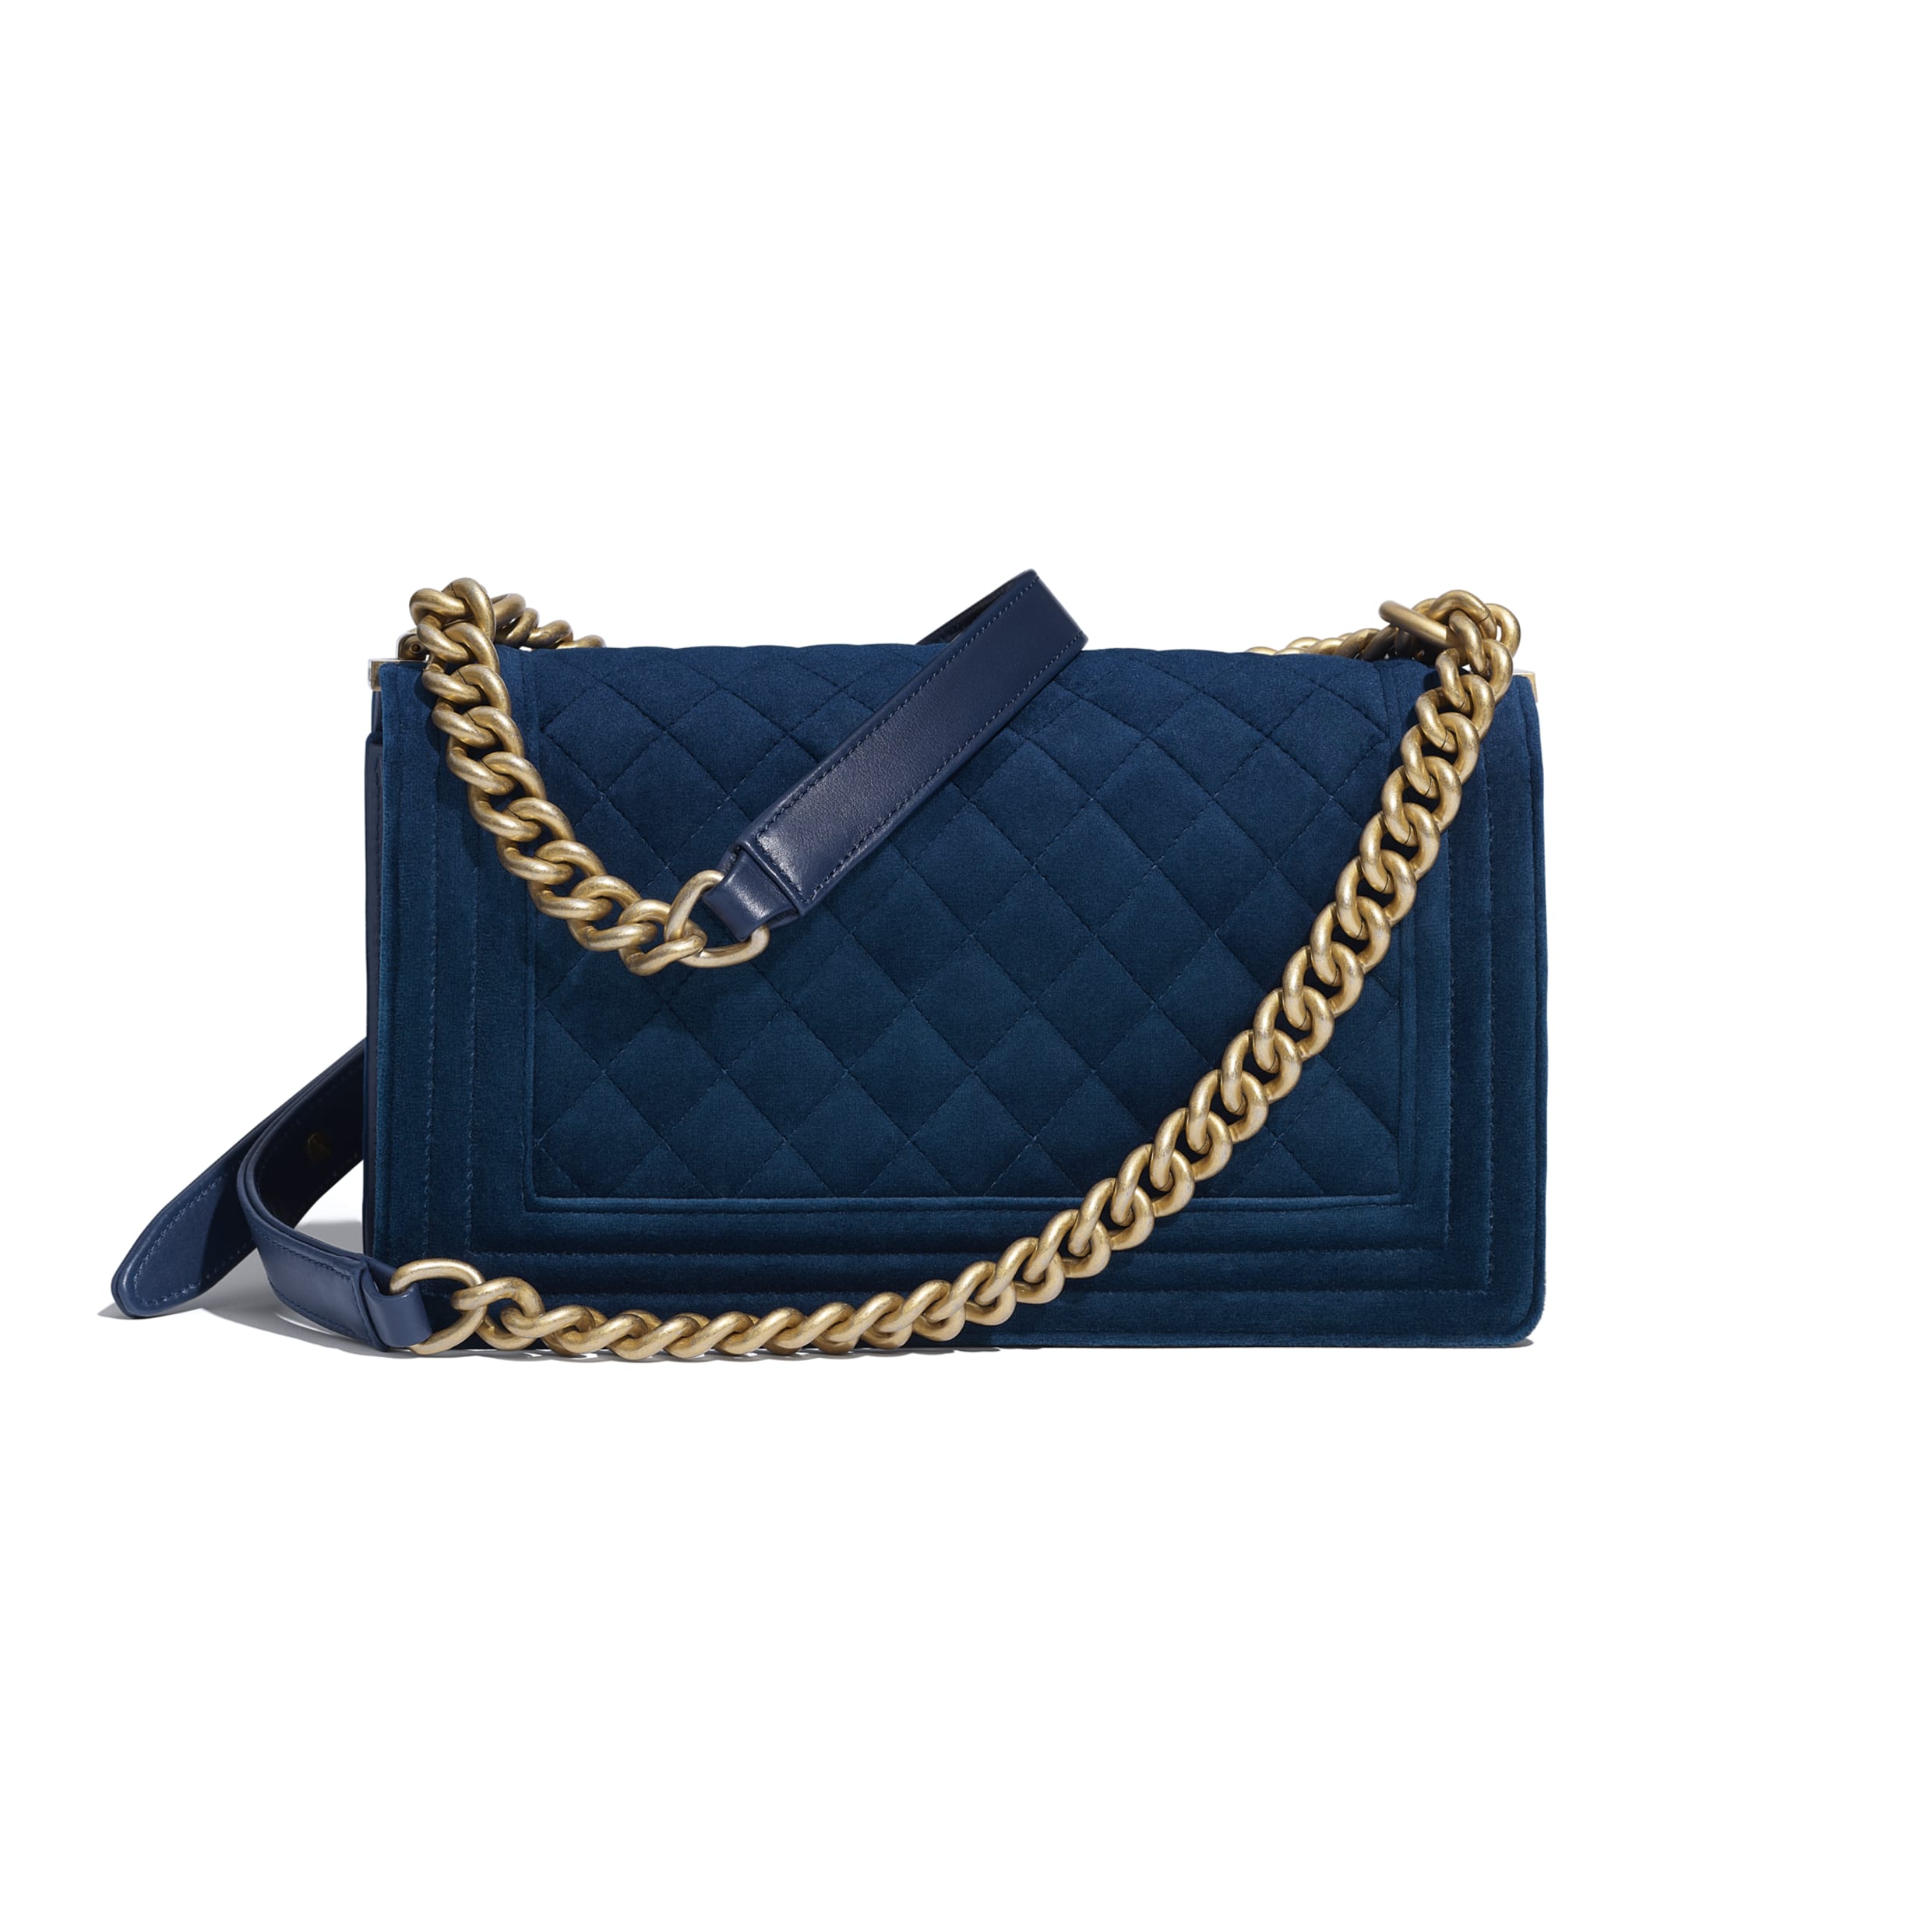 Chanel Boy Medium Handbag Blue